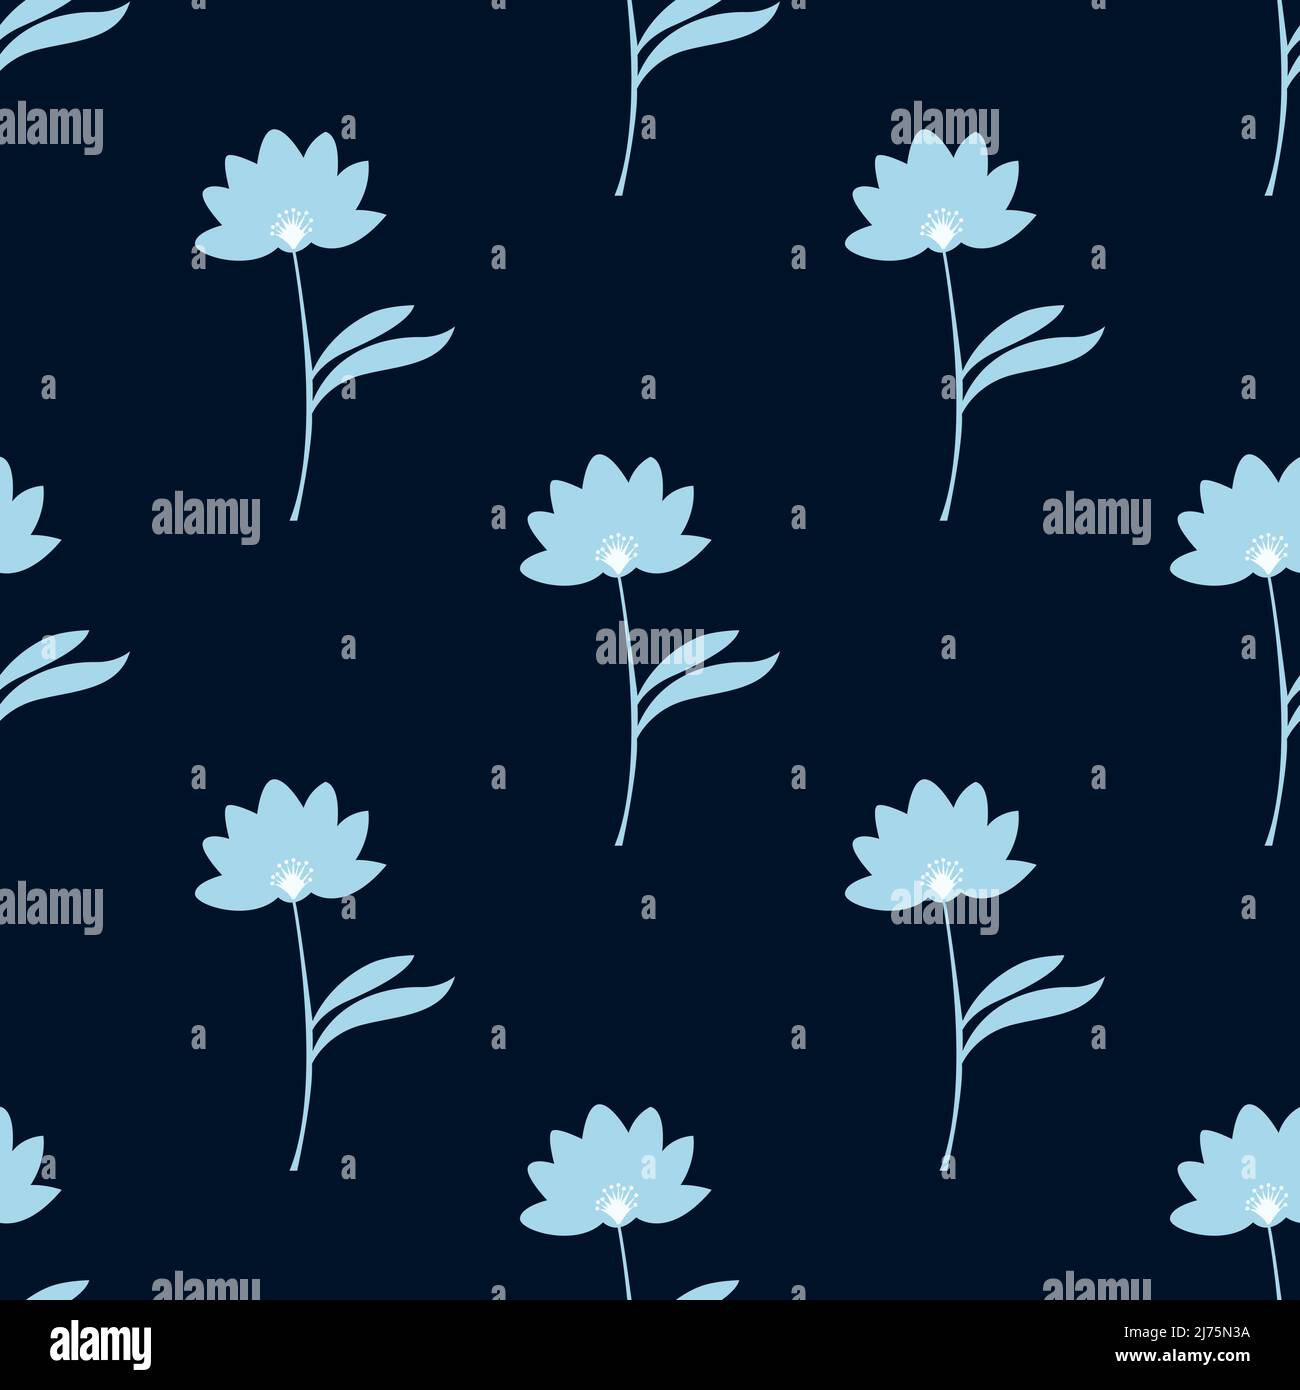 Les fleurs de lotus bleu clair isolées sur fond sombre sont dans un motif sans couture - illustration vectorielle Illustration de Vecteur